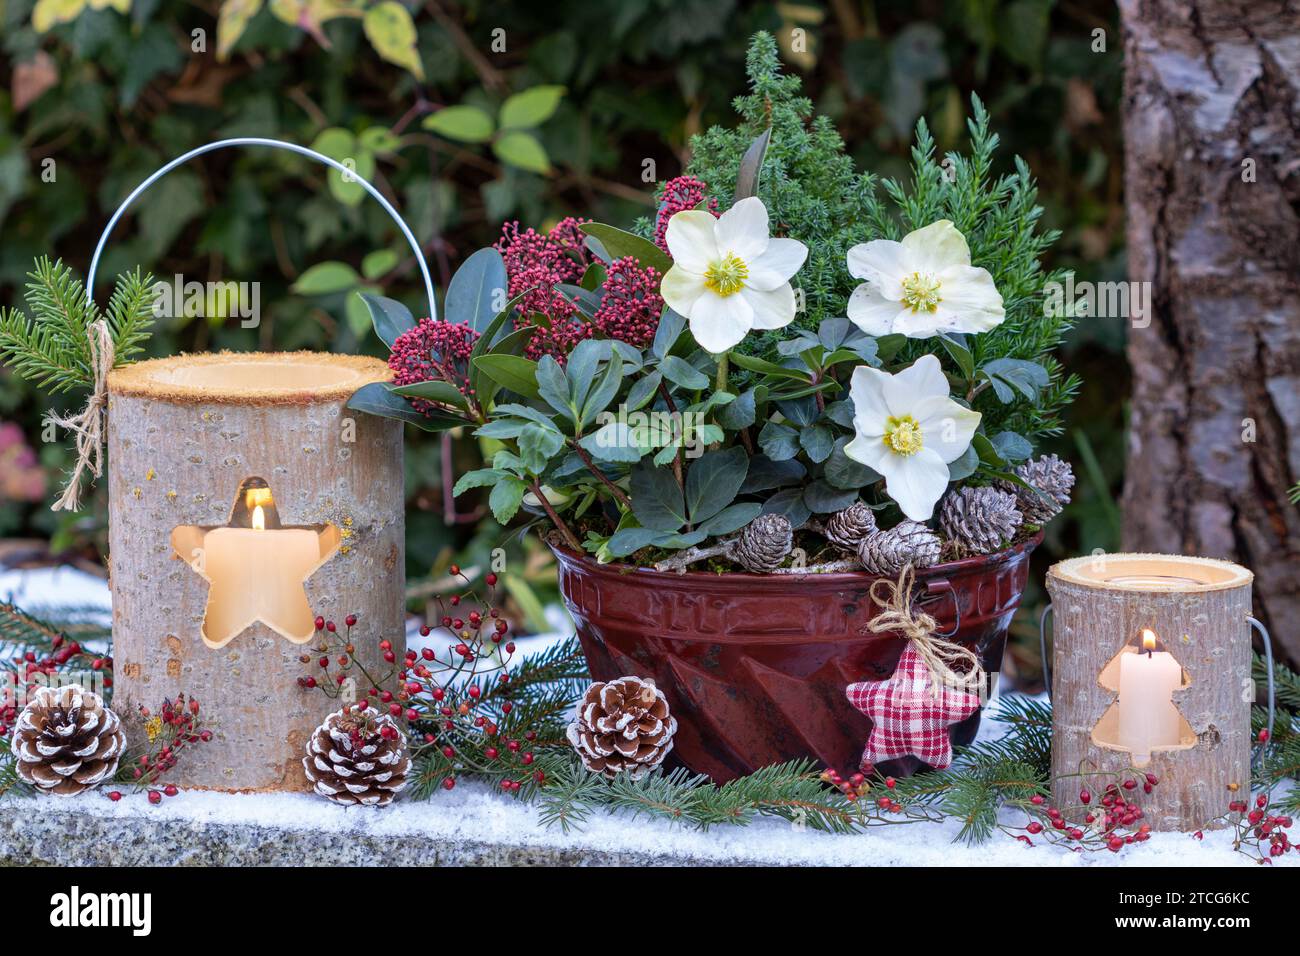 arrangement de noël avec helleborus niger, conifères et skimmia dans le vieux moule guglhupf et lanternes en bois Banque D'Images